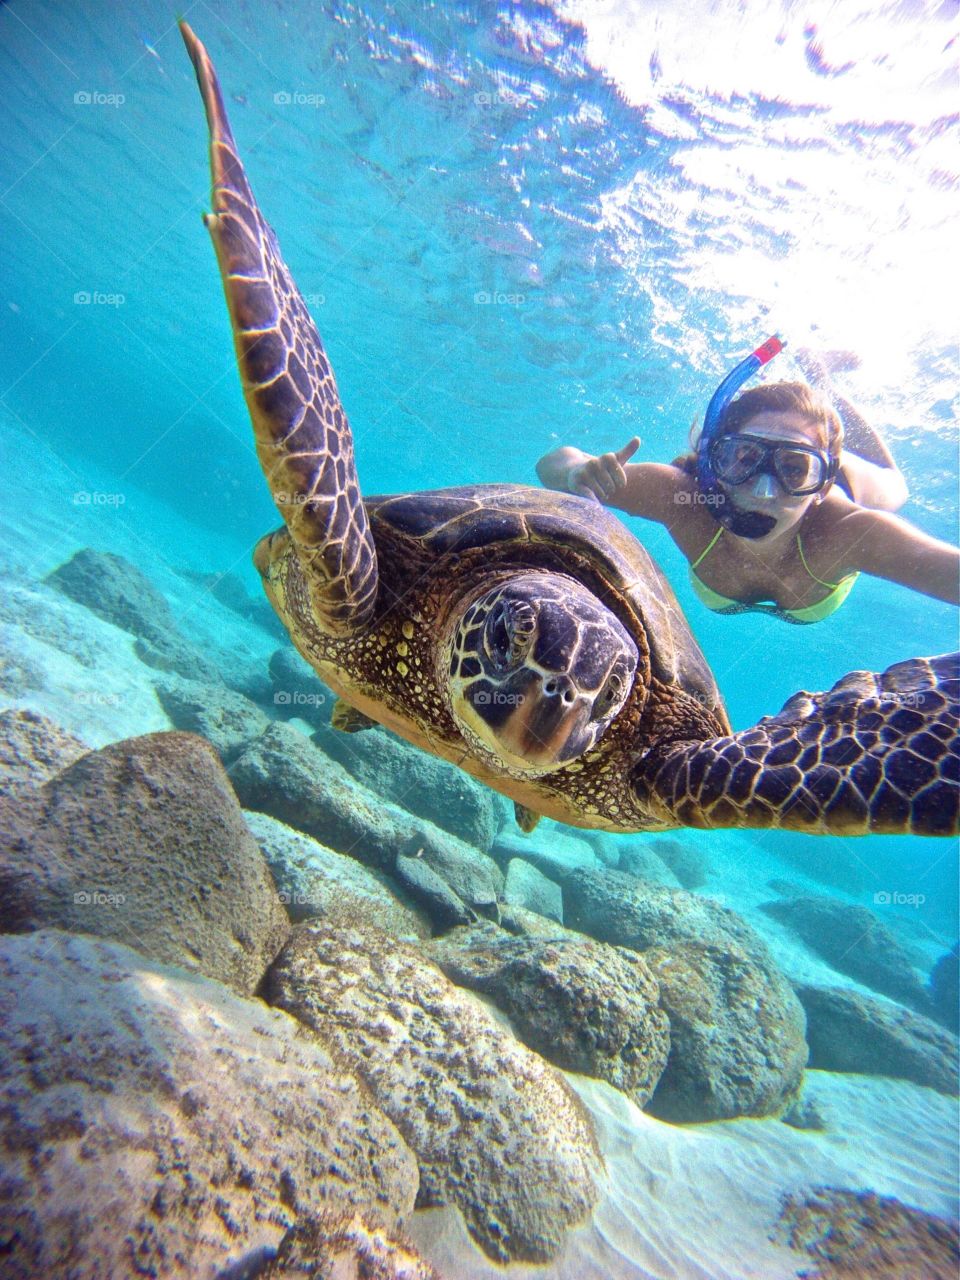 Turtle selfie 